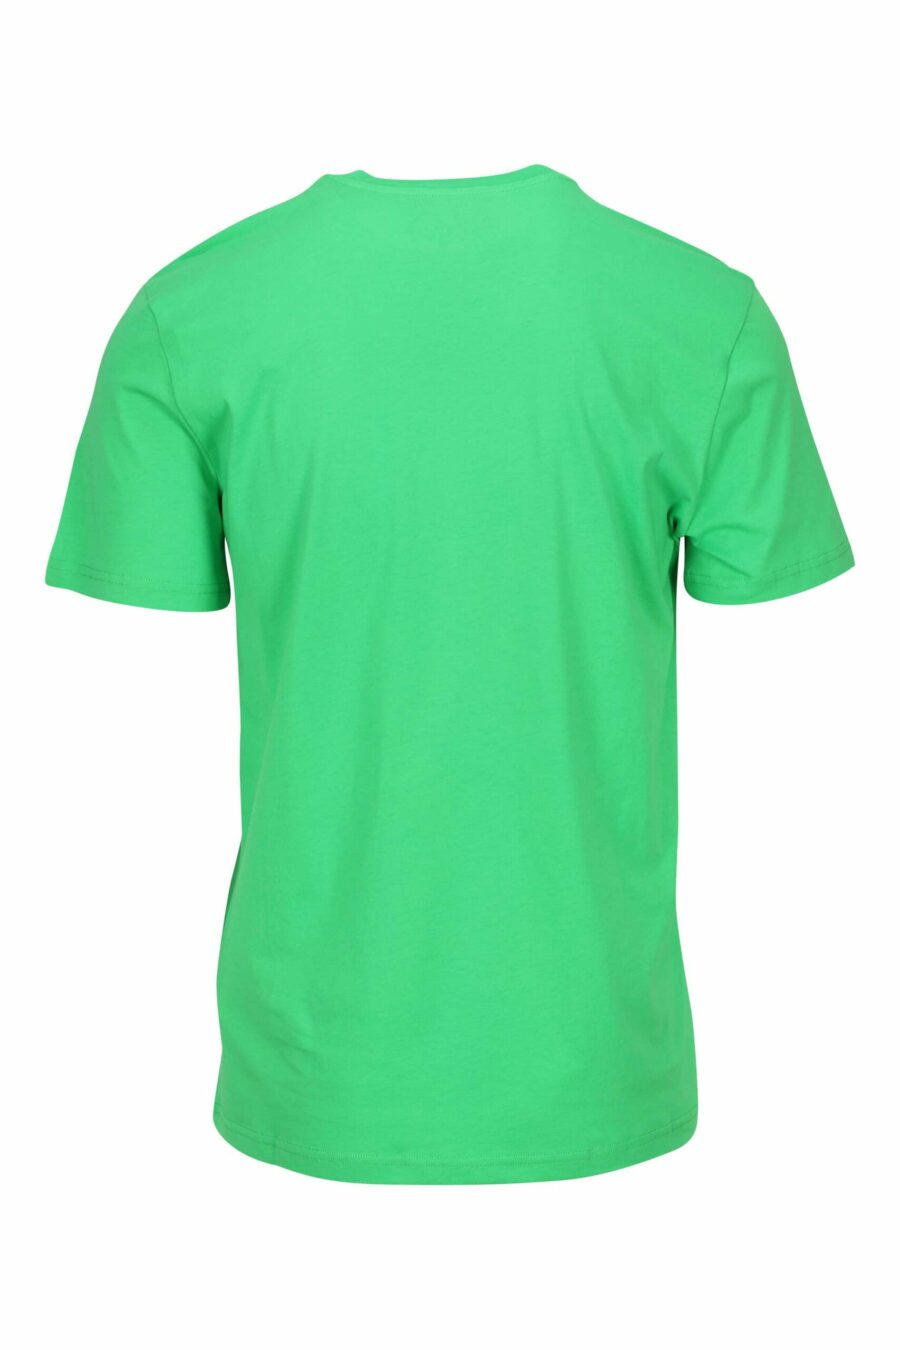 Camiseta verde claro de algodón orgánico con maxilogo negro clásico - 667113751917 1 scaled